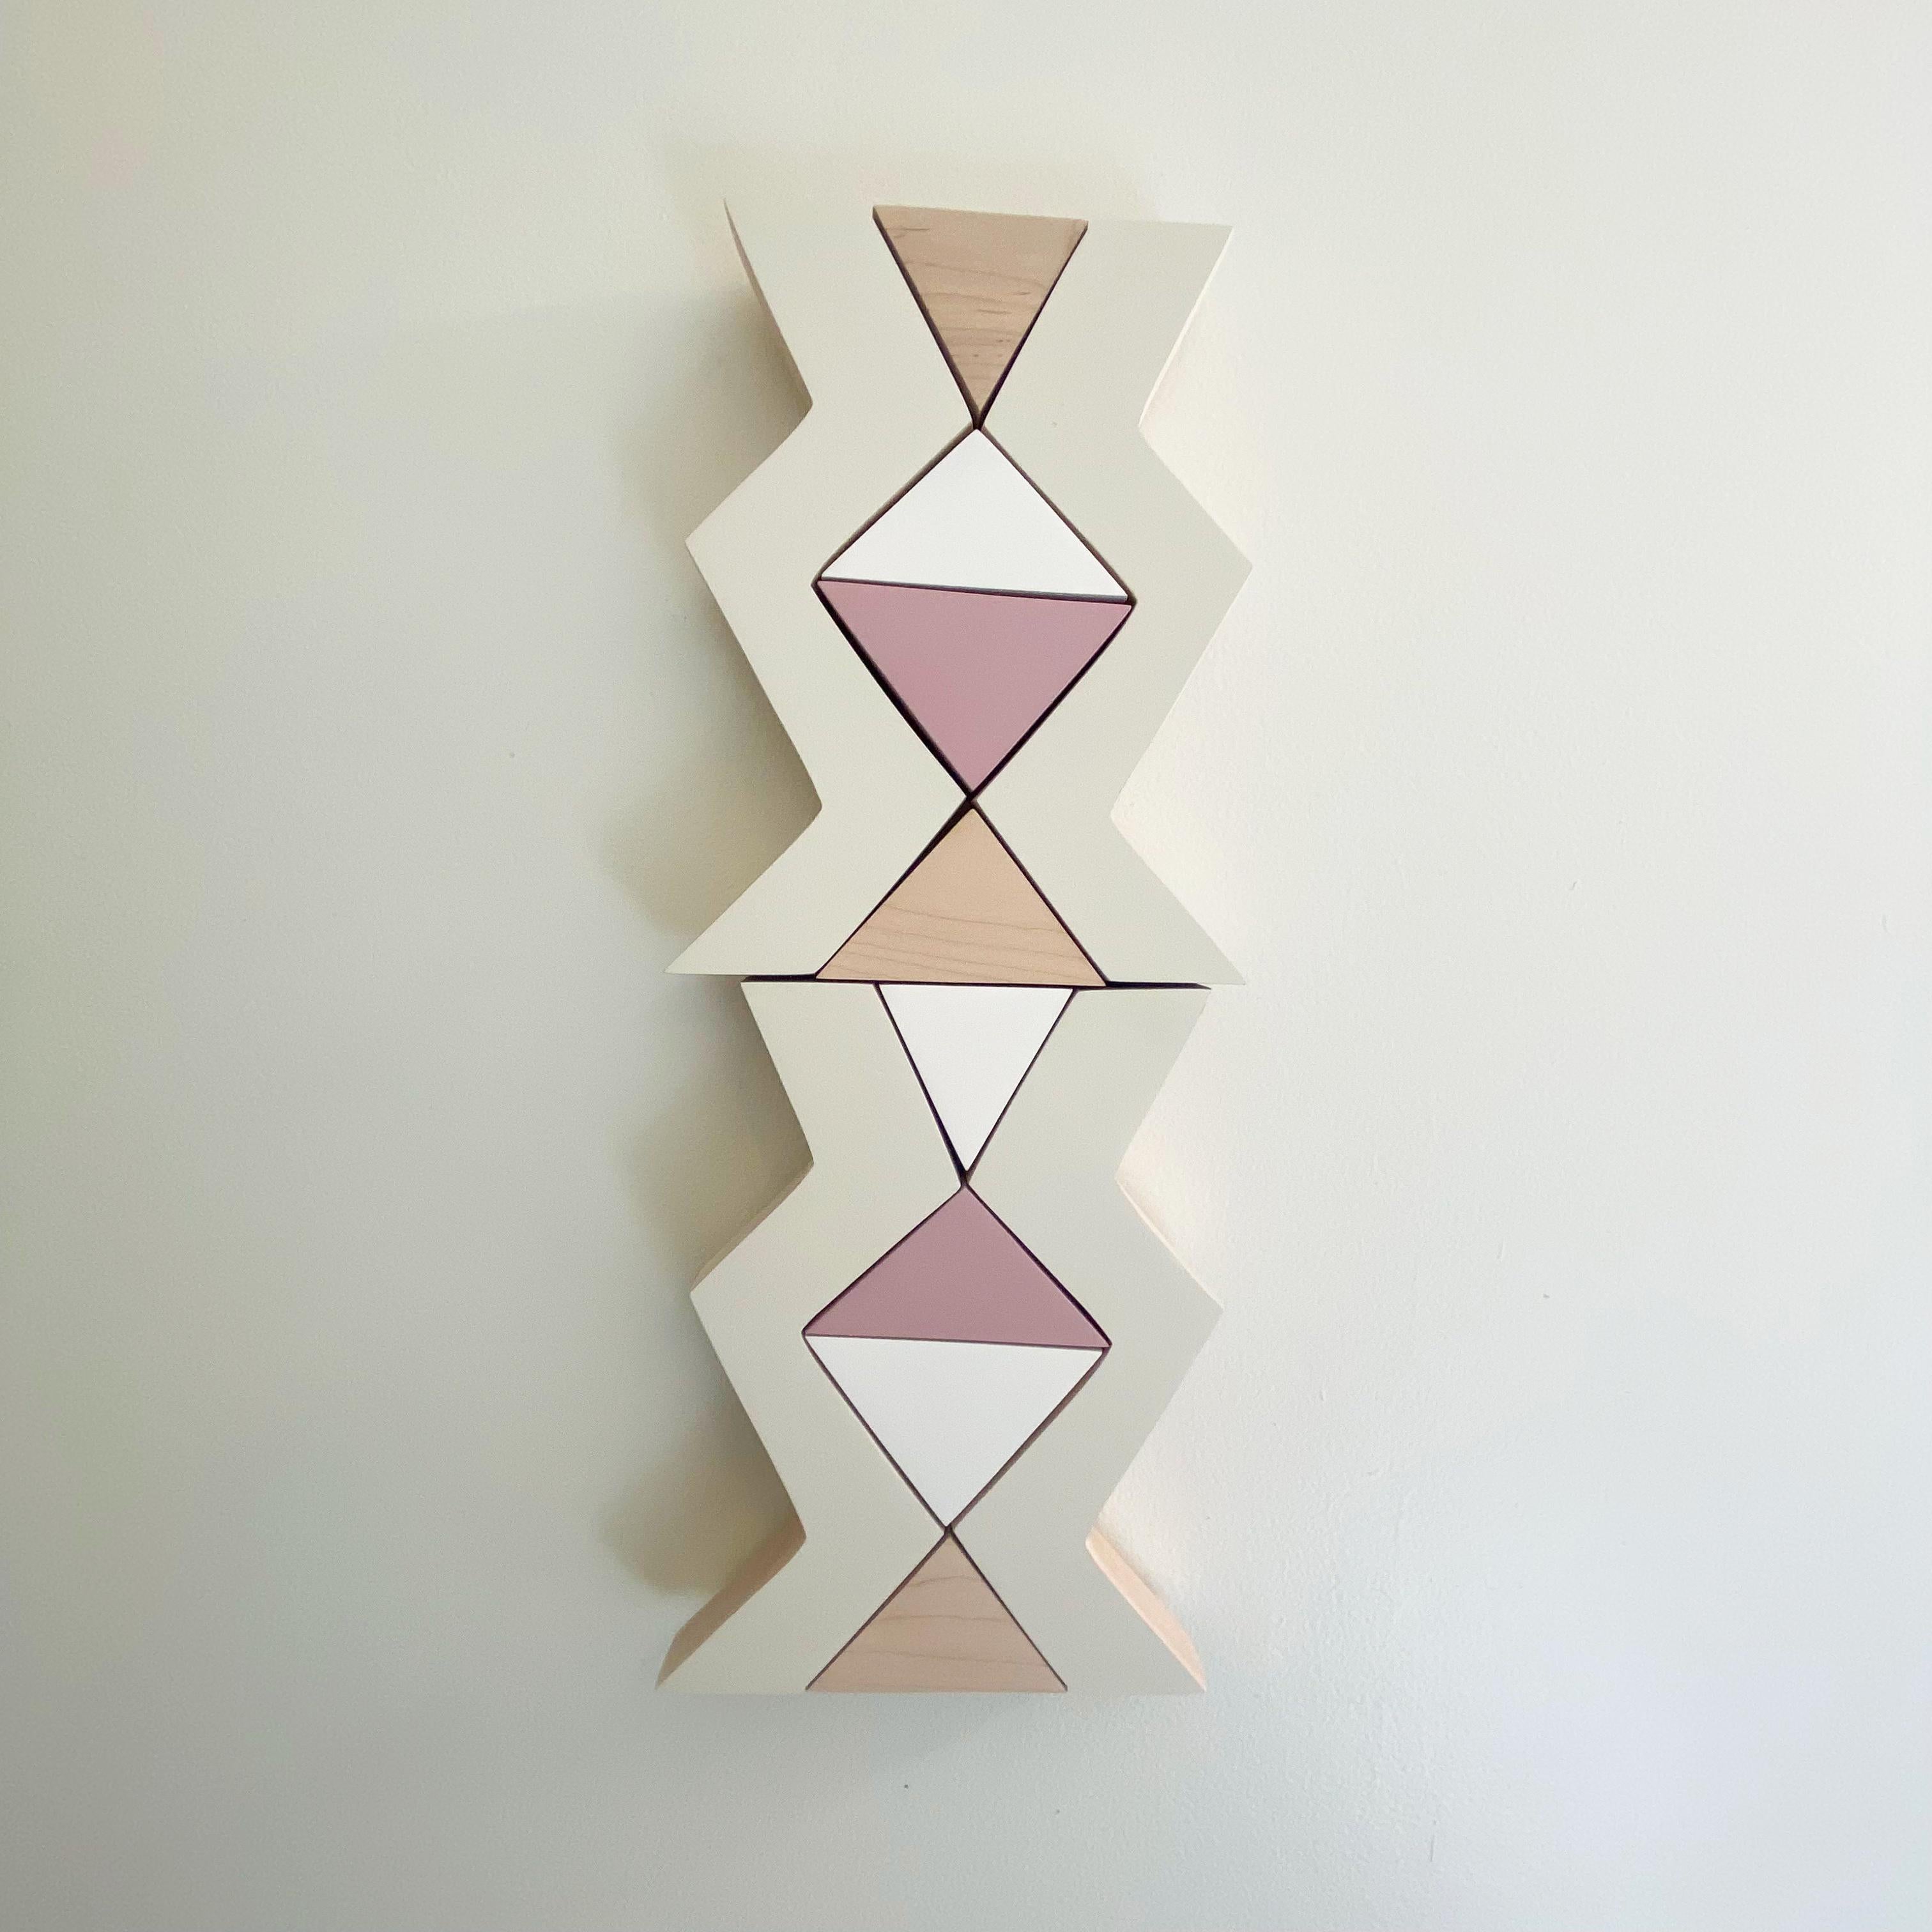 Kunstwerk aus Acryl auf massivem Ahornholz, matte Klarlackierung.

Die Serie Small Pop besteht aus minimalistischen Wandskulpturen aus Holz, die klein und blockig sind und leuchtende, gesättigte Farben aufweisen. Die Stücke wurden von meiner